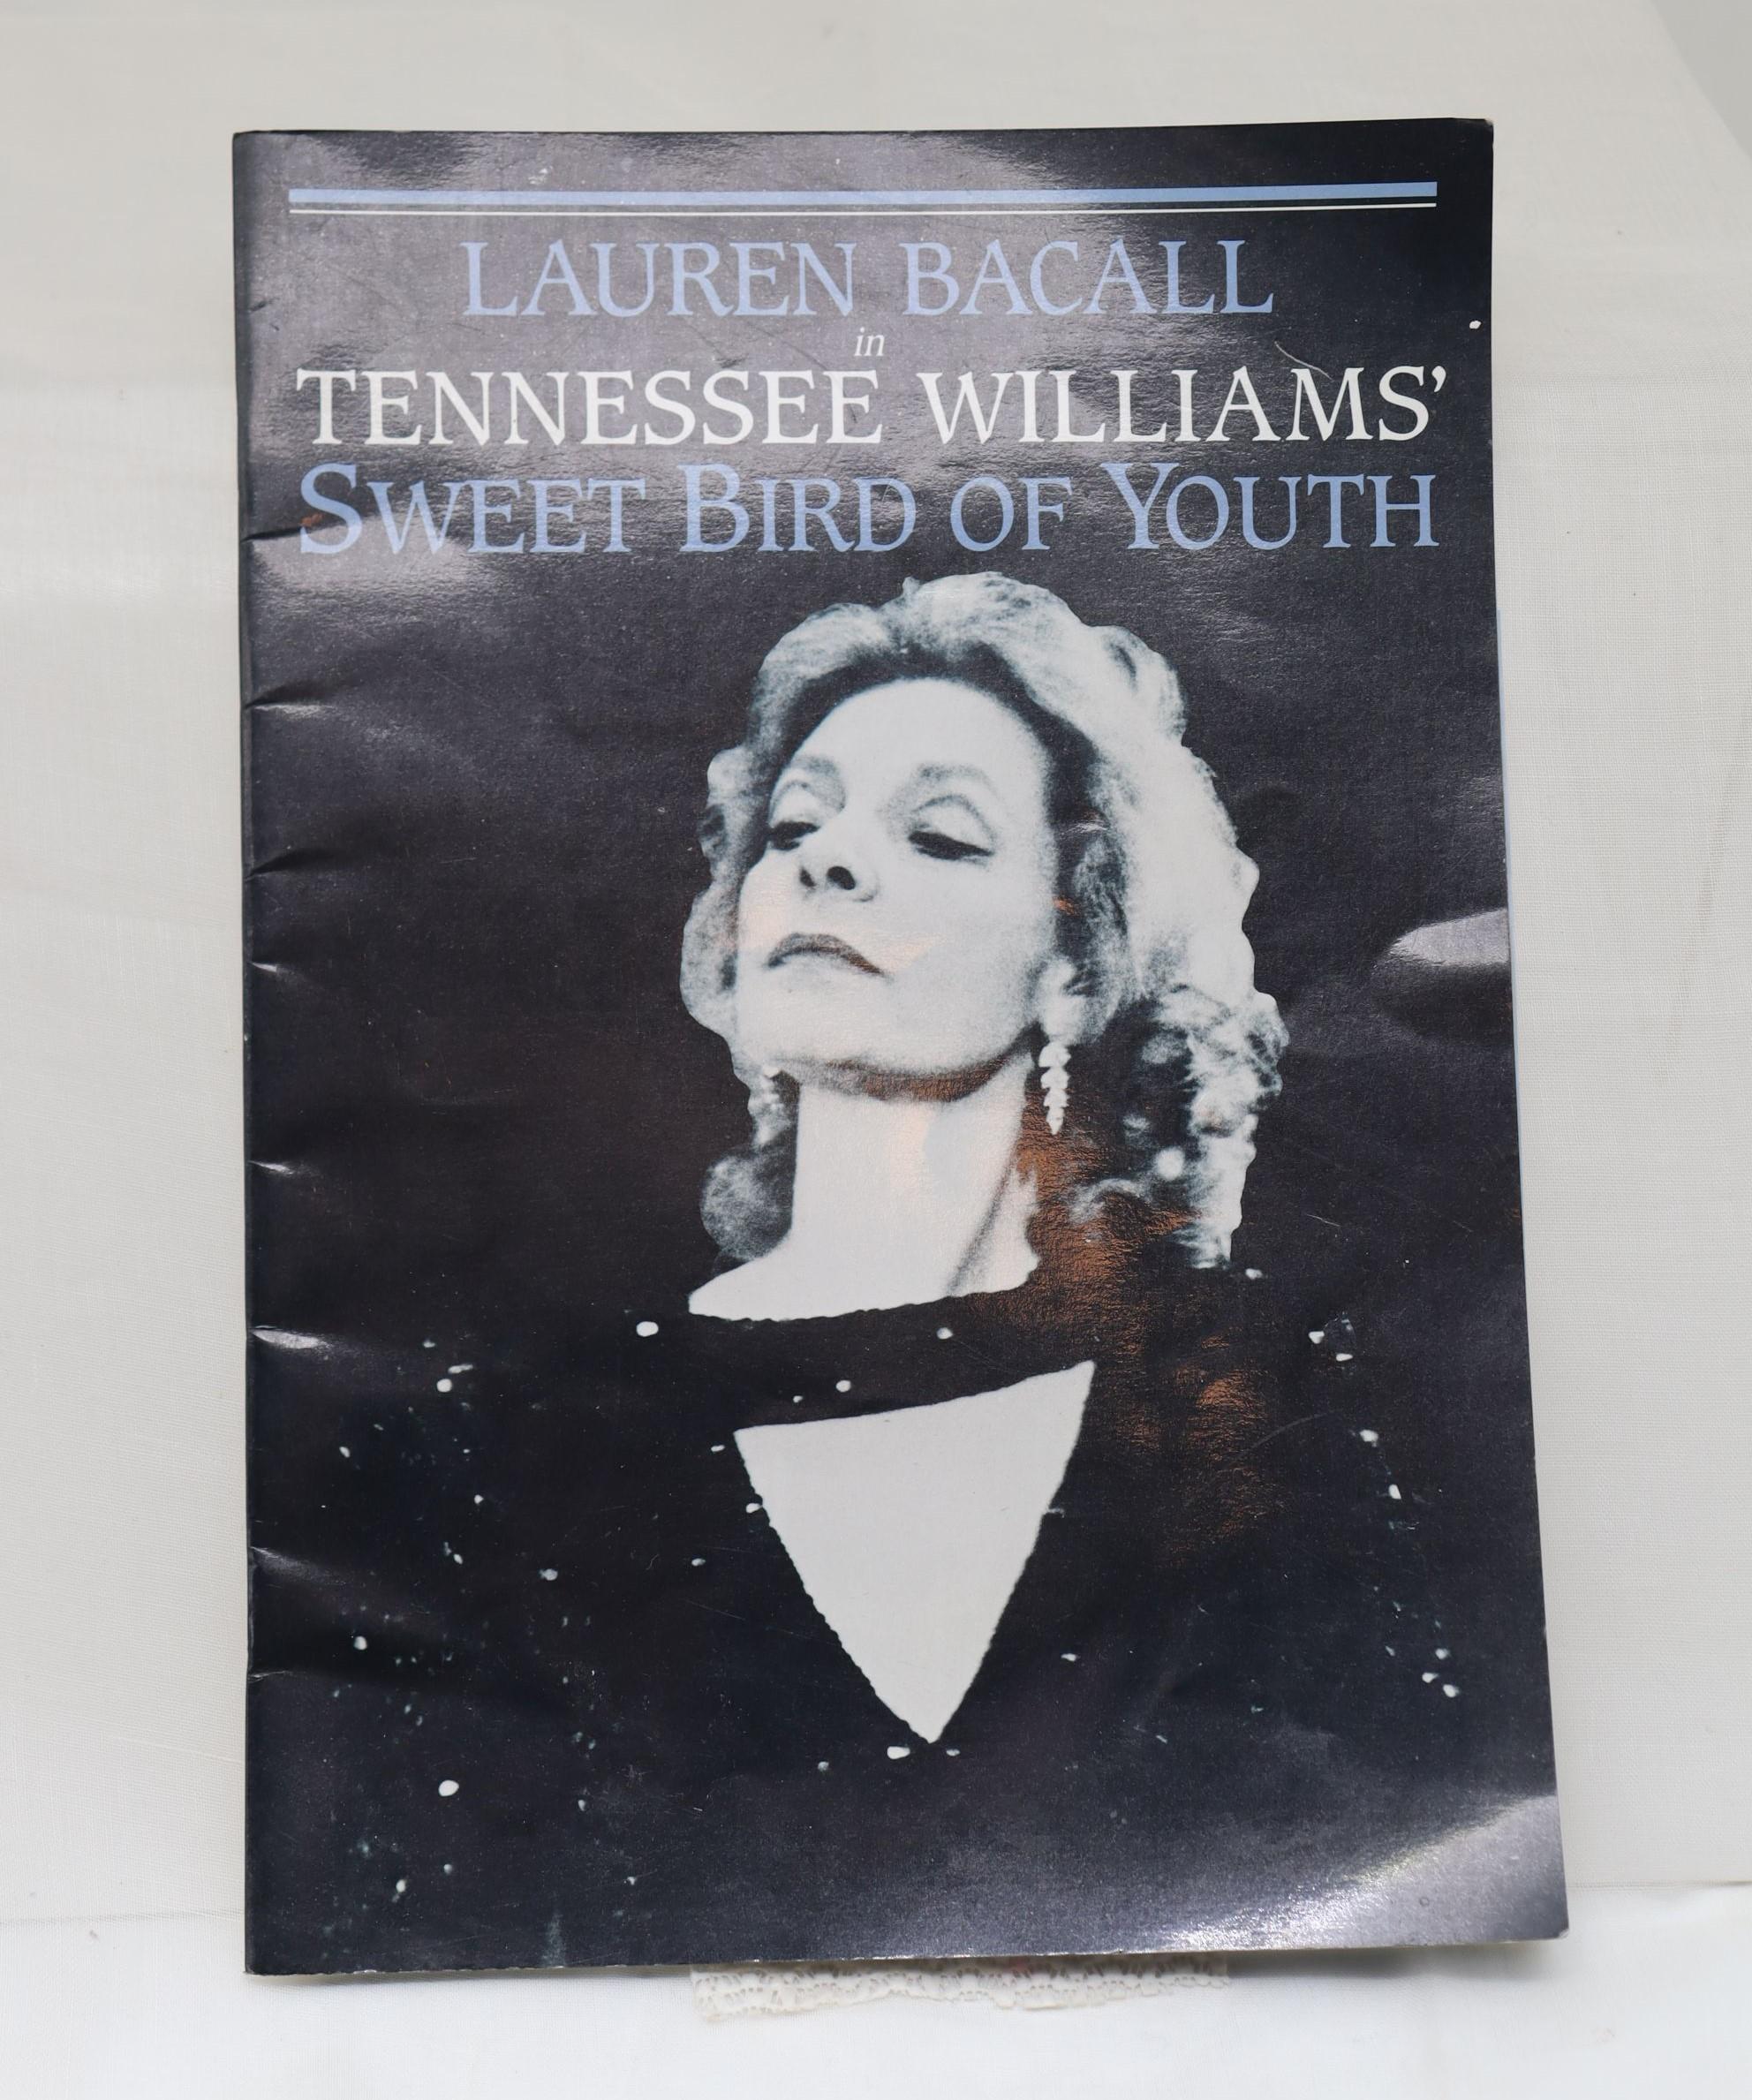 Ce programme a été dédicacé par Lauren Bacall (1924-2014) en Australie en 1986 alors qu'elle jouait le rôle de la princesse Kosmonopolis dans la pièce de Tennessee Williams 